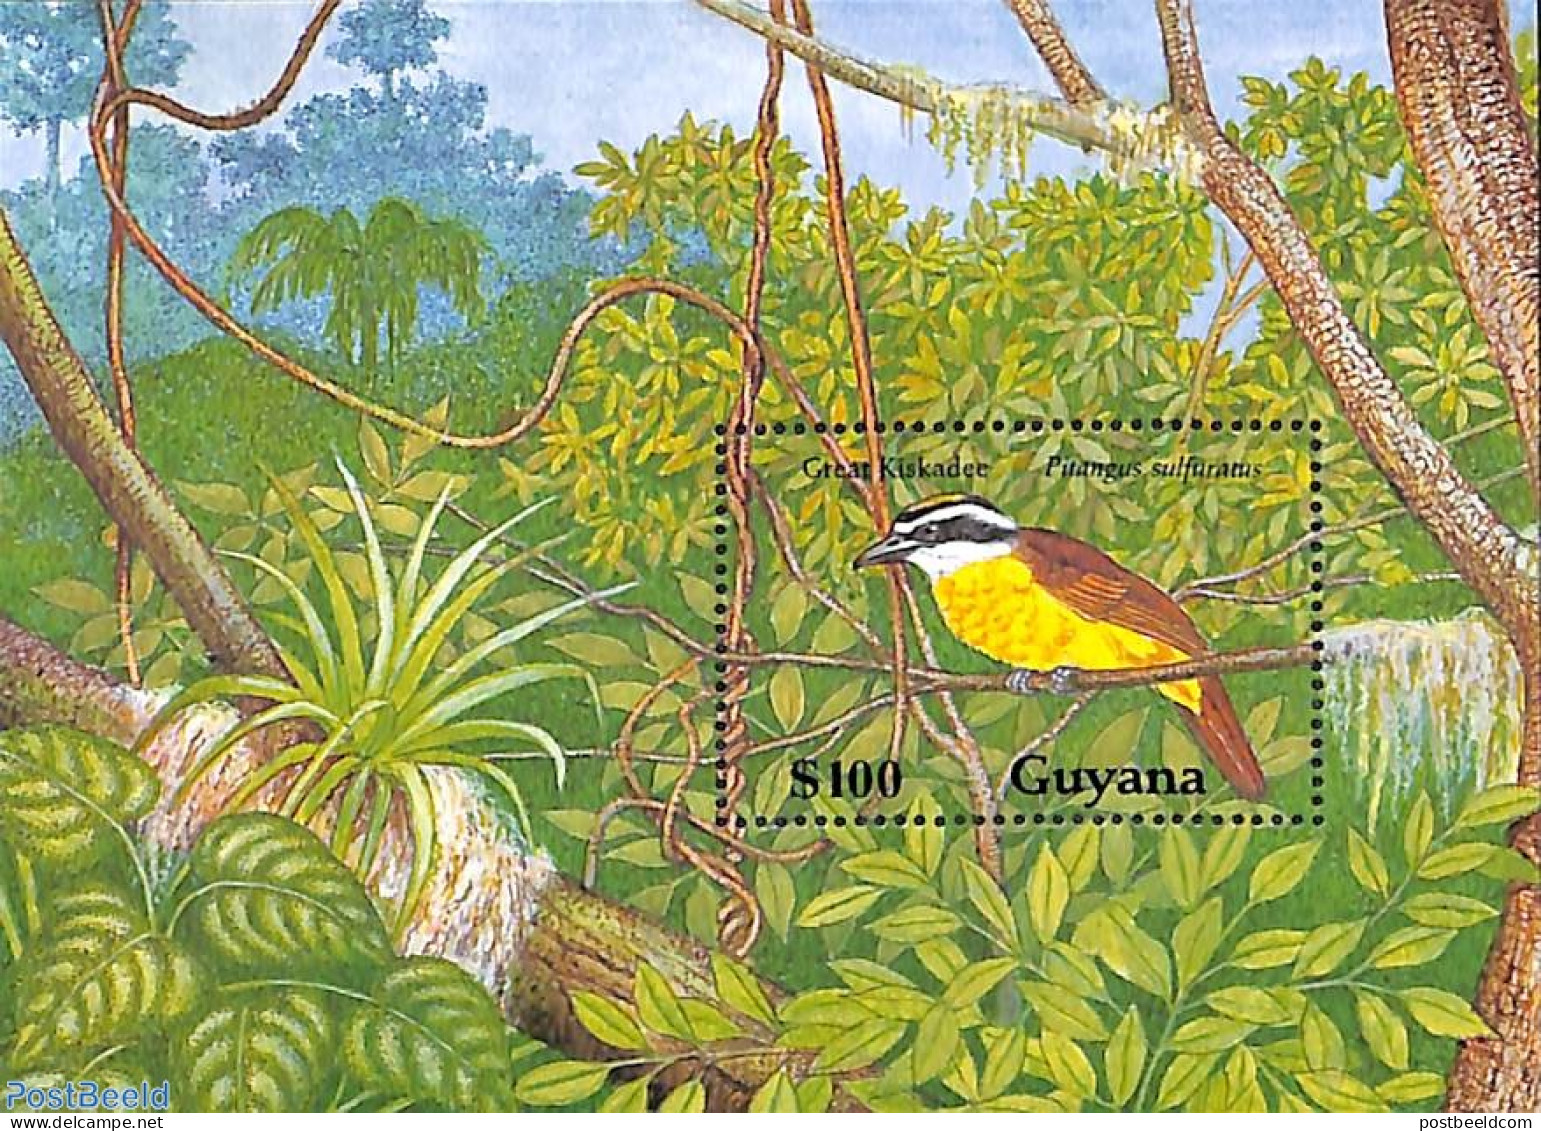 Guyana 1990 Pitangus Sulphuratus S/s, Mint NH, Nature - Birds - Guyana (1966-...)